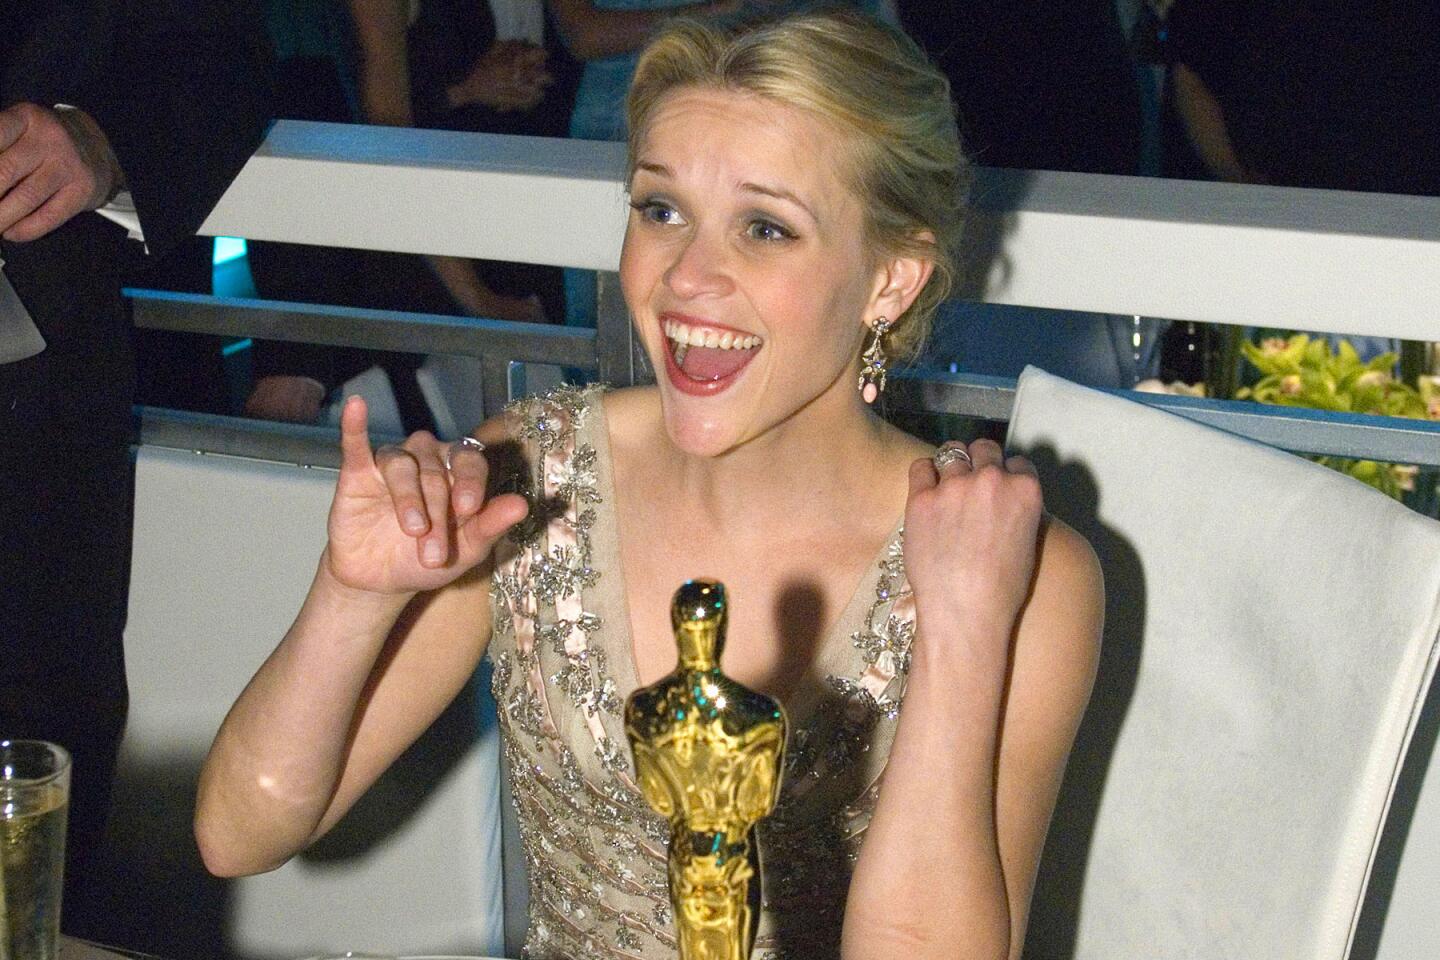 Academy Awards | 2006